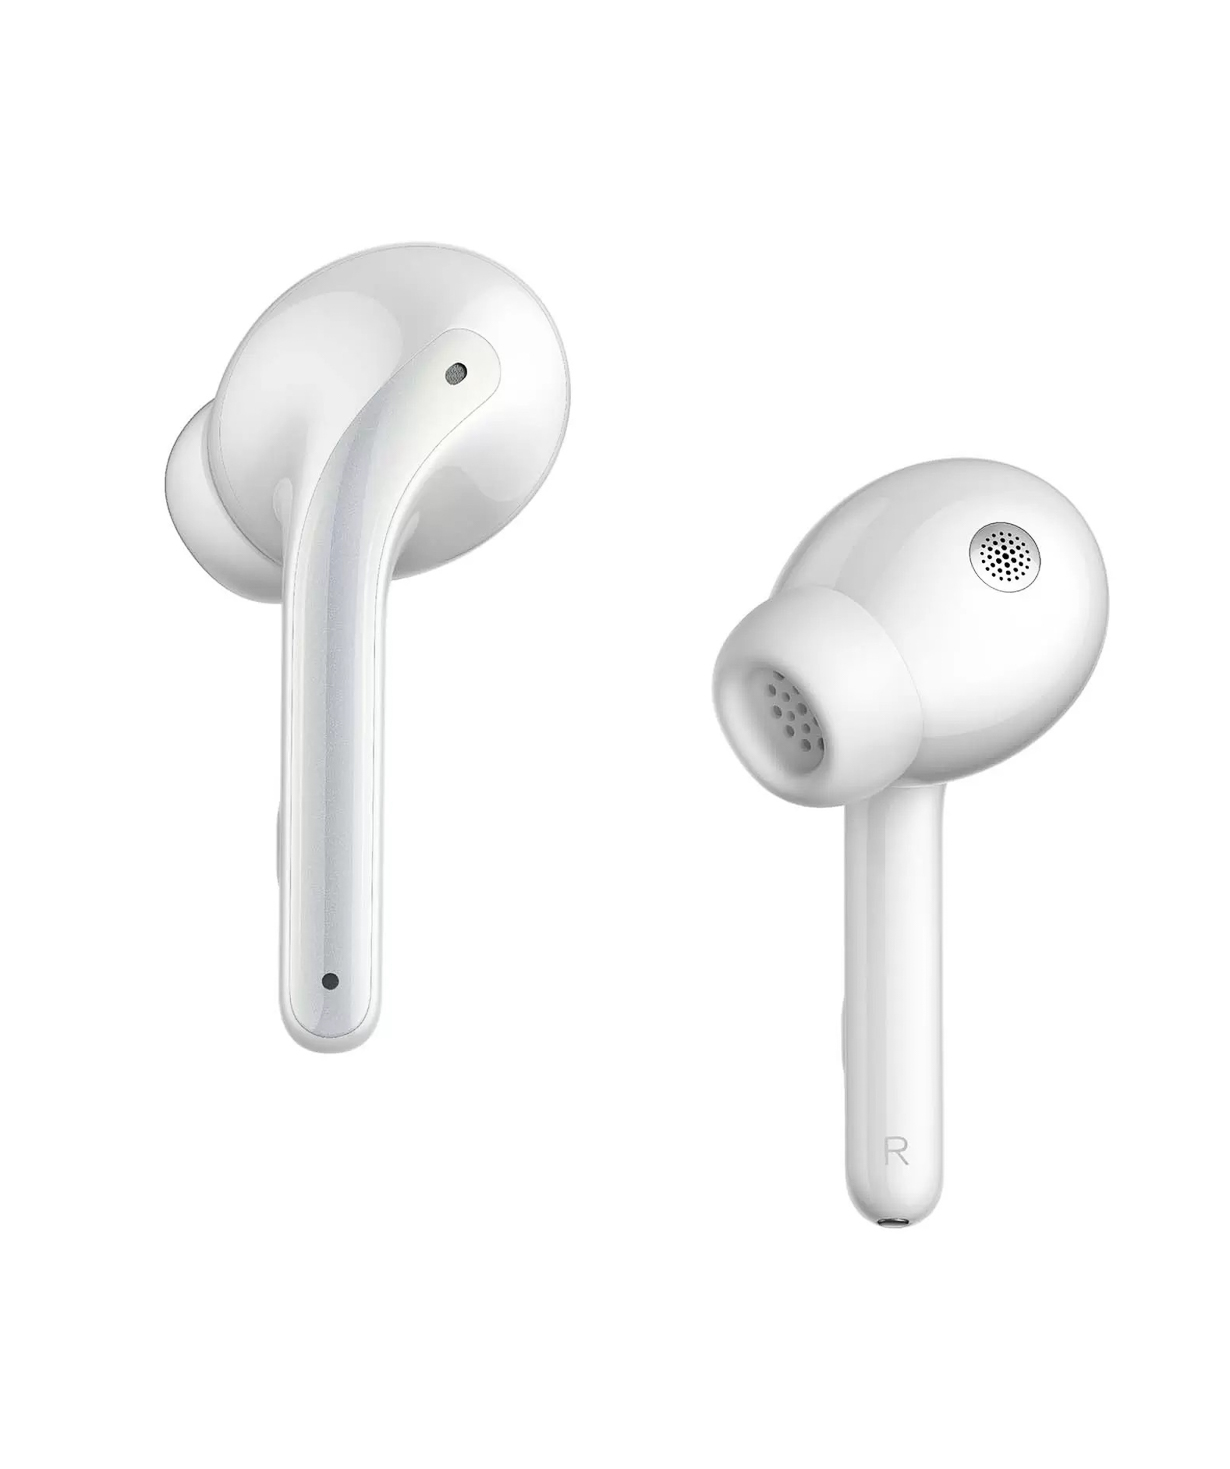 Wireless earbuds «Xiaomi Redmi» 3, white